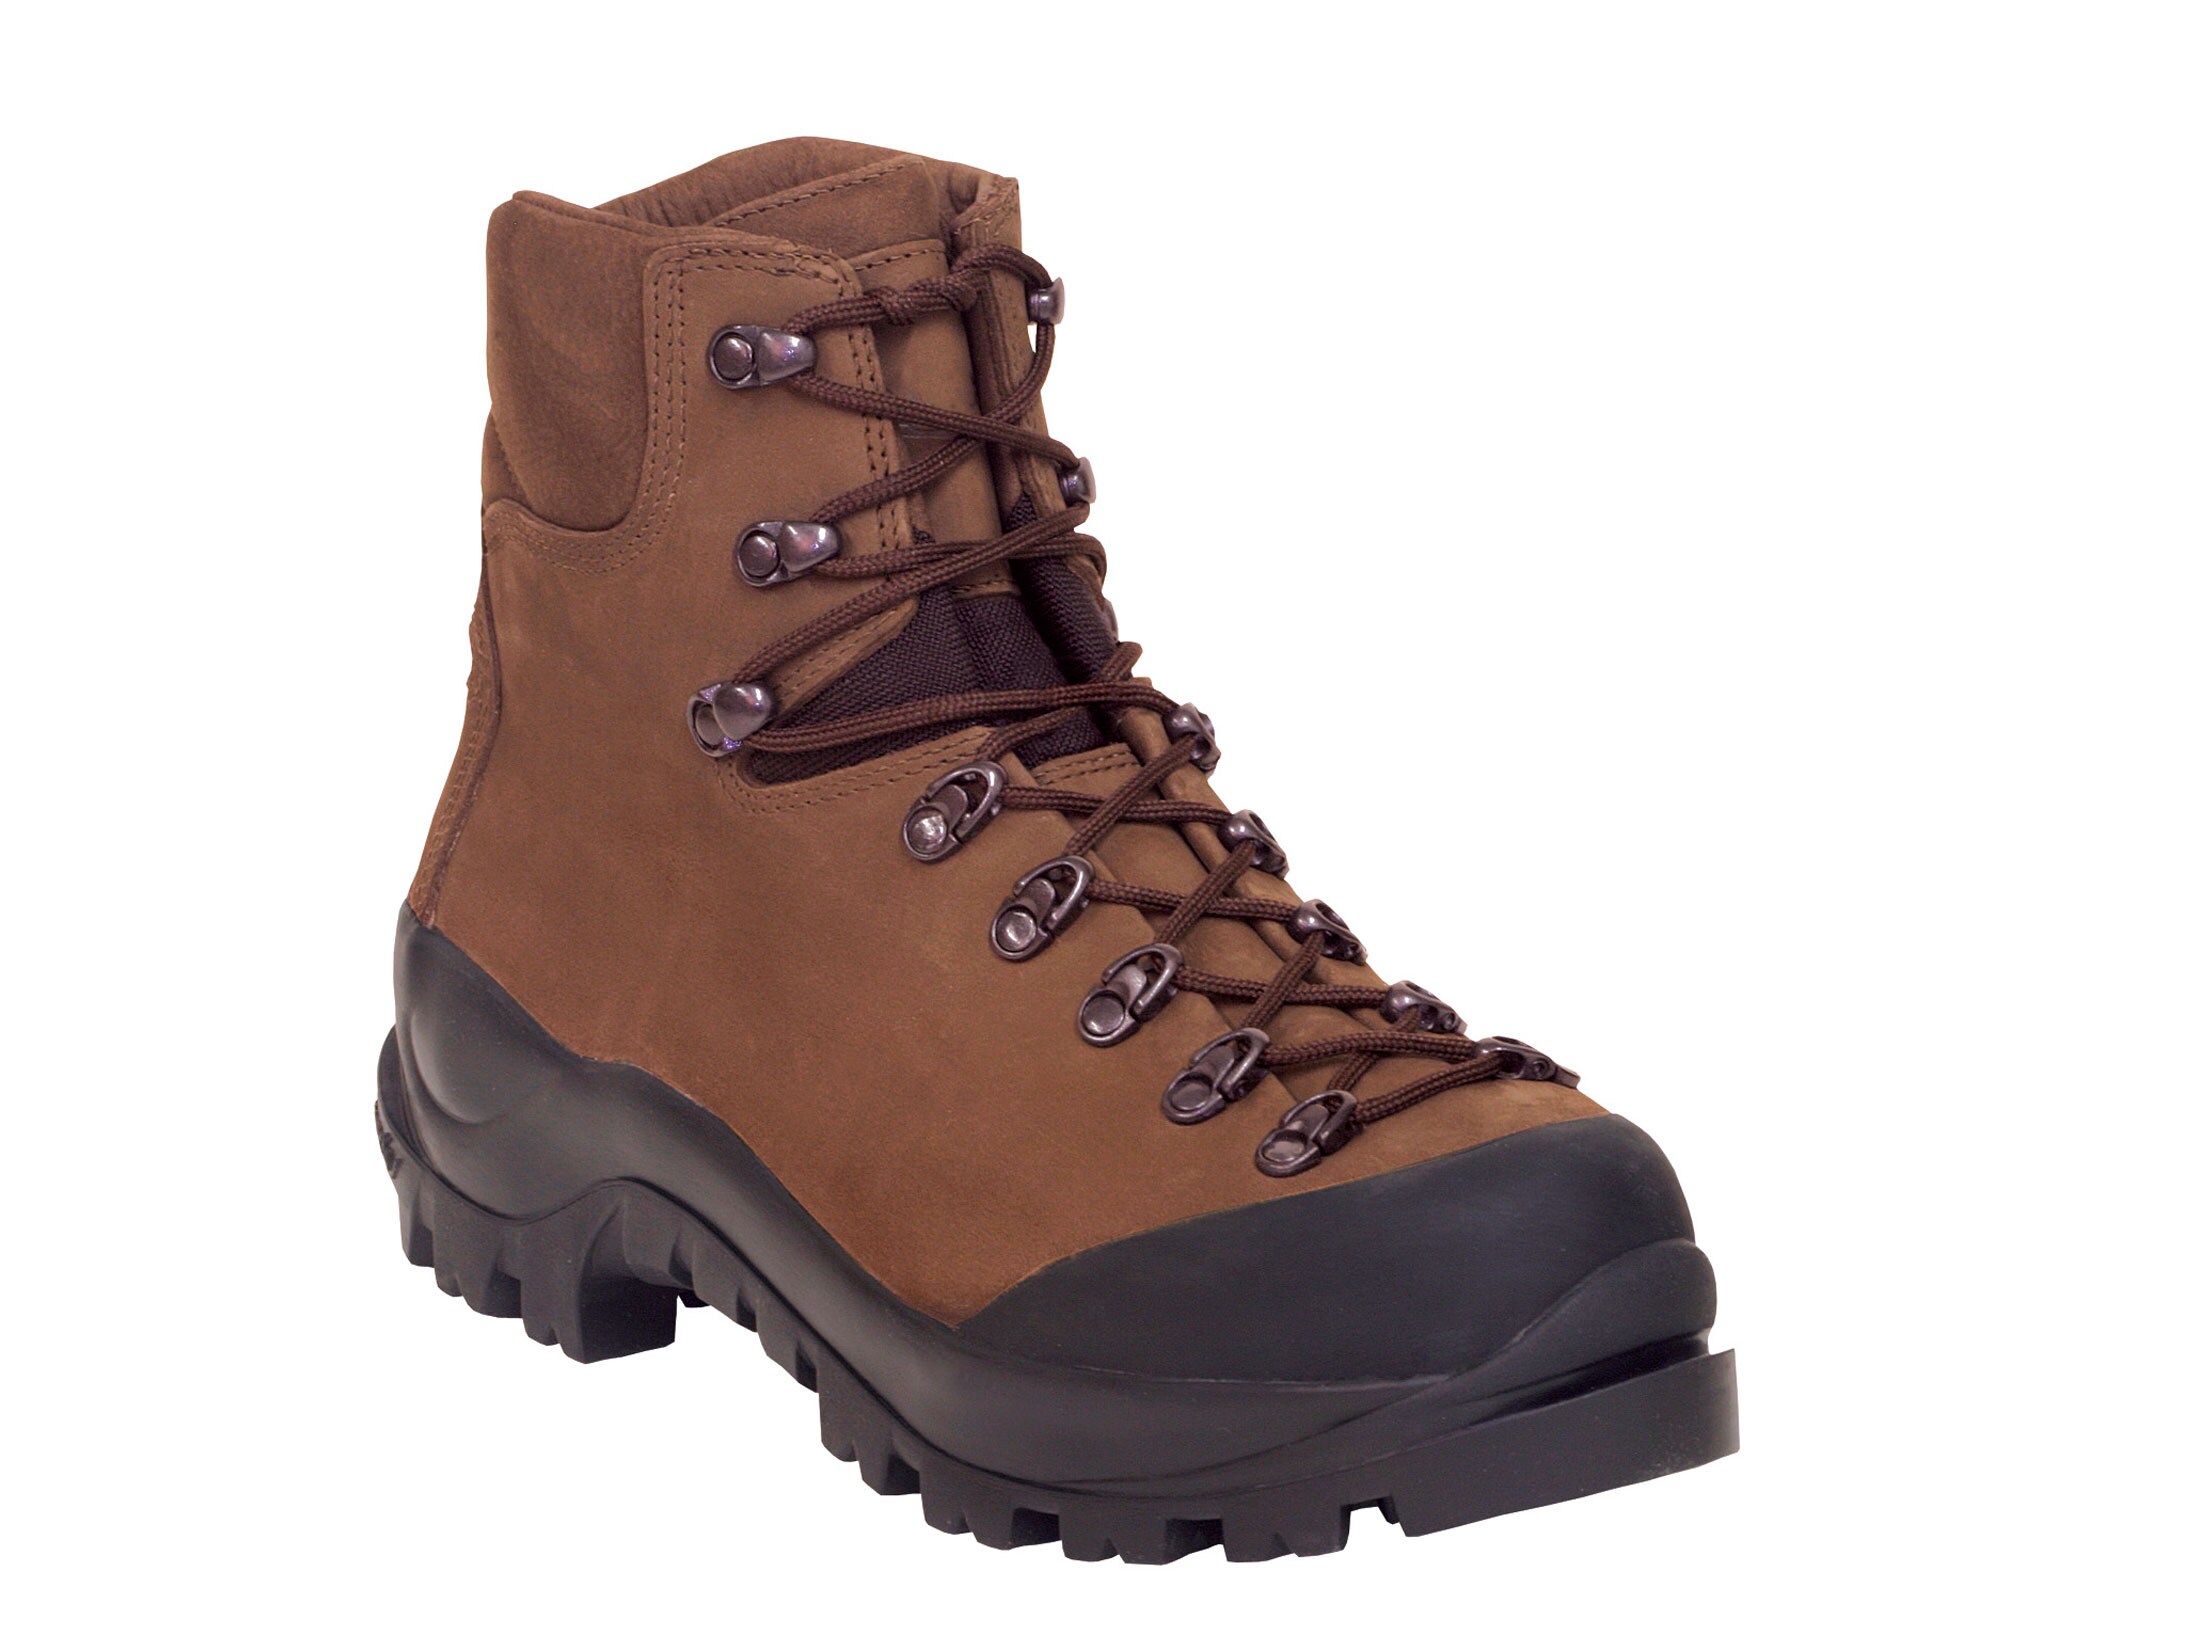 Kenetrek Desert Guide 7 Hunting Boots Leather Brown Men's 8 D